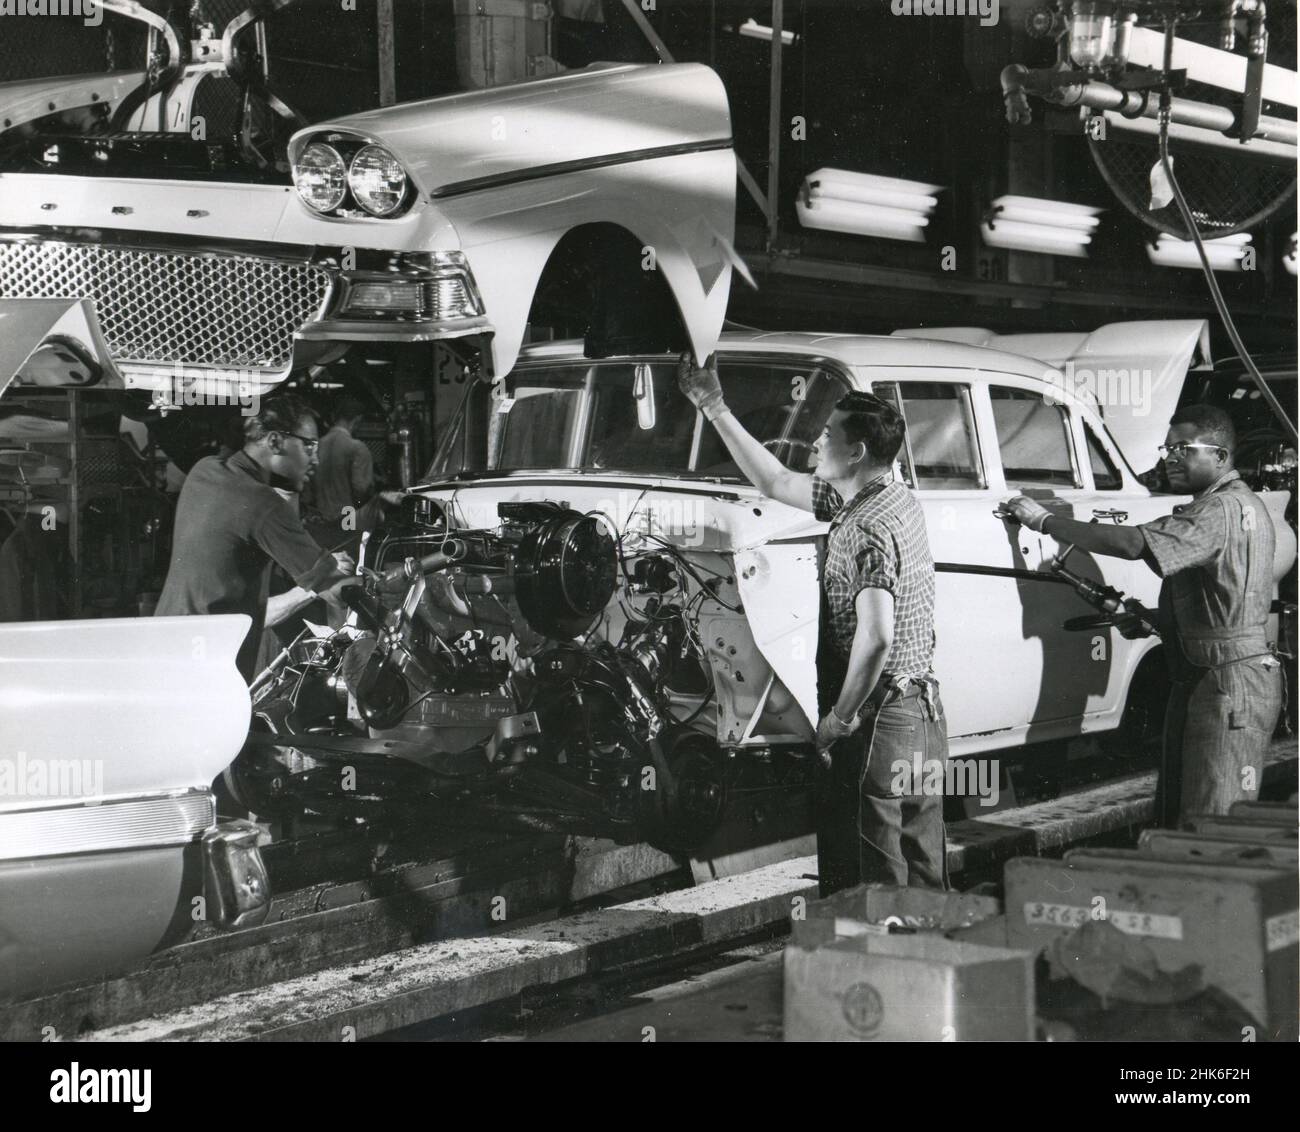 1958 - Dearborn, Michigan - la seule usine automobile qui peut transformer des matières premières en une voiture finie dans les 28 heures est l'usine Rouge de Ford.Ici, sur la dernière ligne de l'usine d'assemblage Dearborn, les matériaux de différentes parties du monde sont combinés en un produit typiquement américain. Banque D'Images